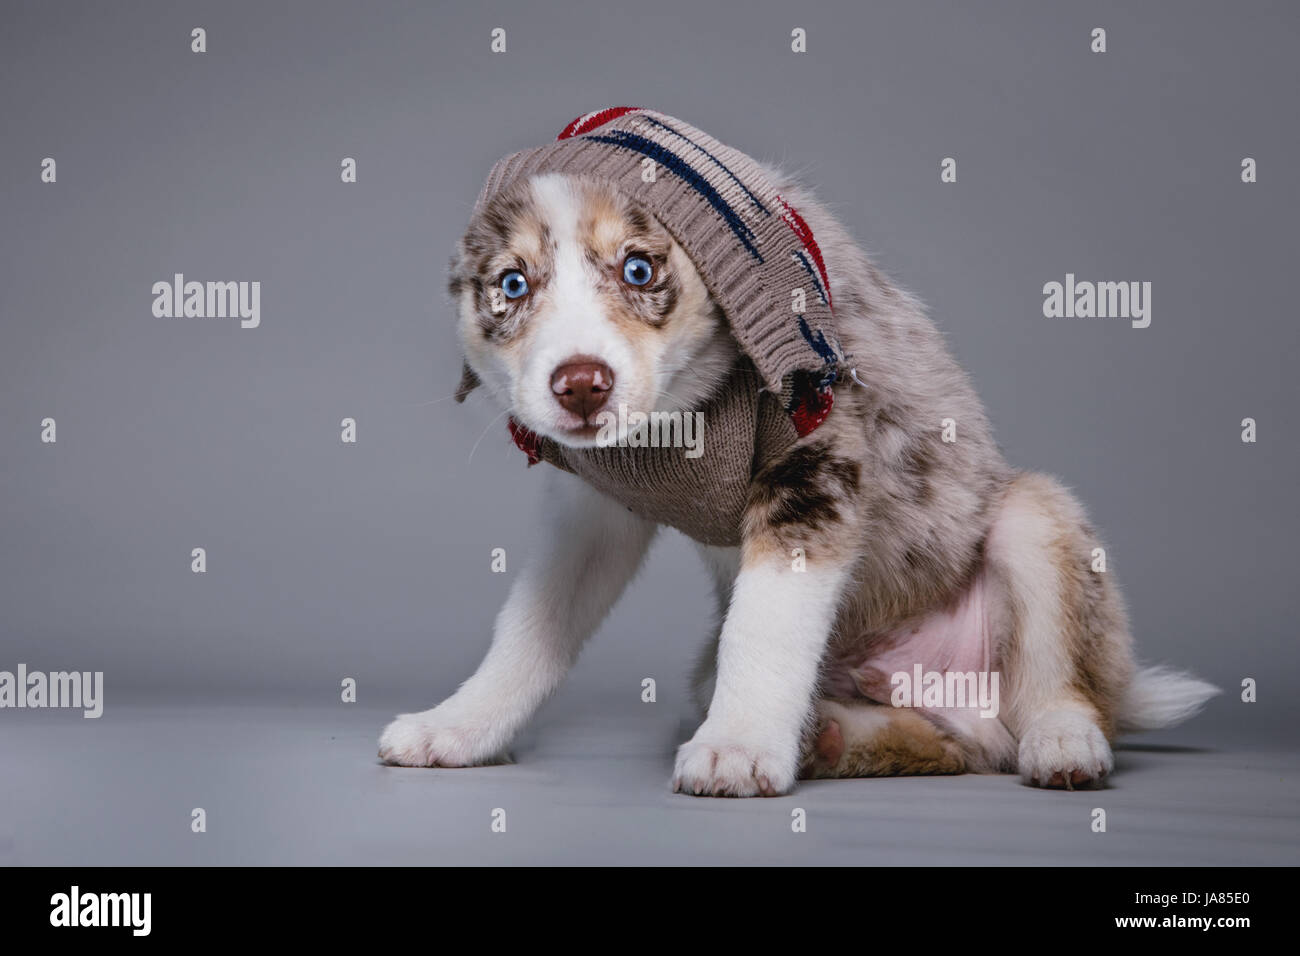 Retrato de Pomsky cachorro con un suéter tirado sobre su cabeza, mirando a la cámara. Foto de stock